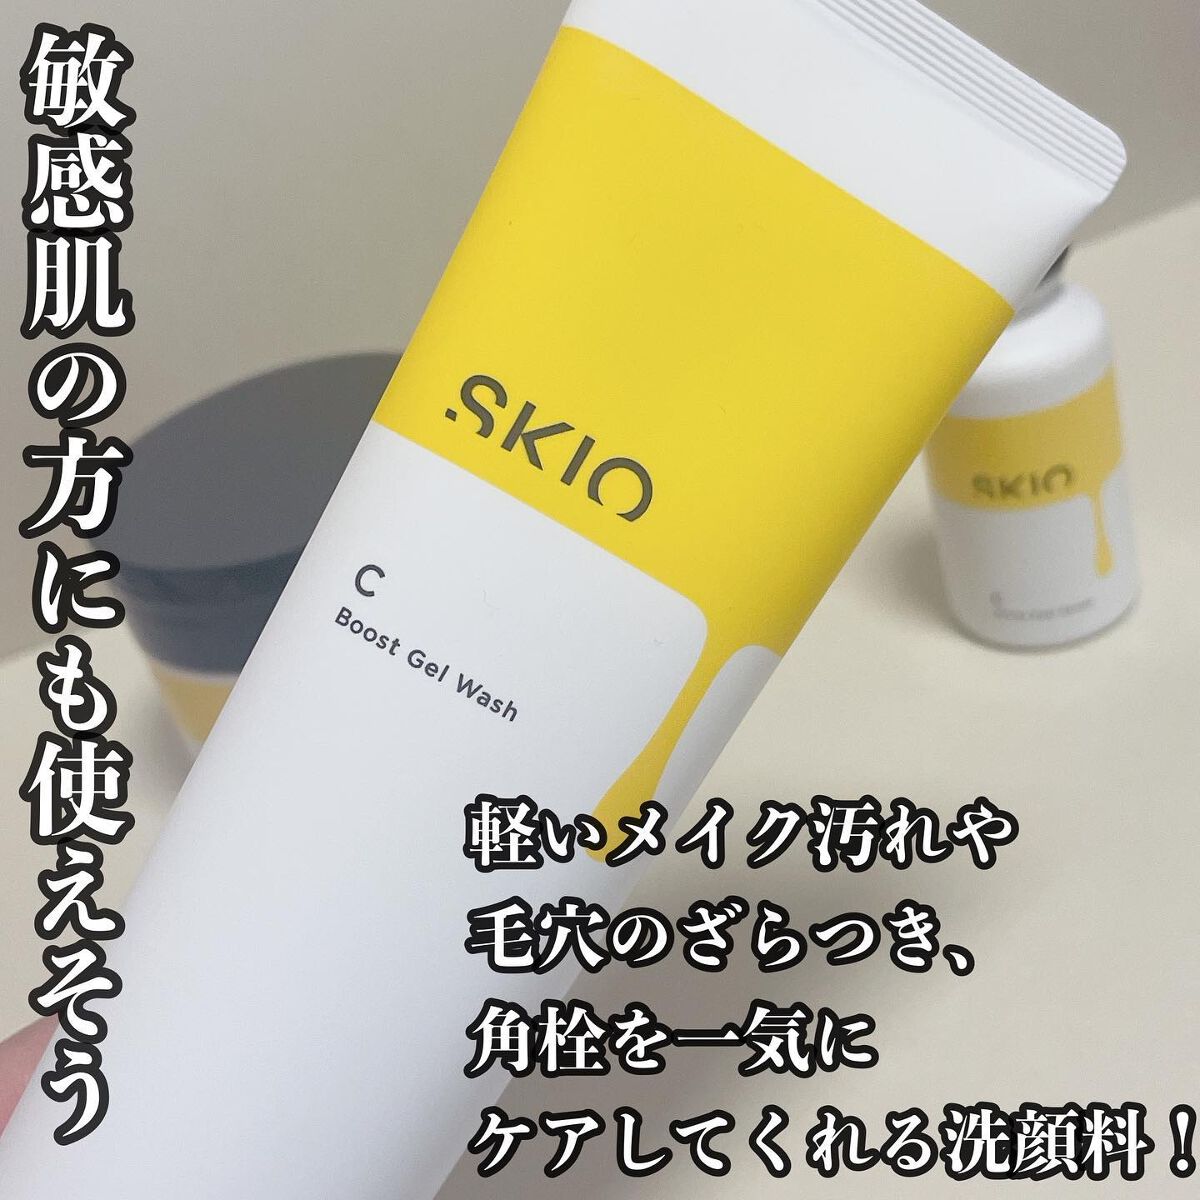 VC ブーストジェルウォッシュ/SKIO/その他洗顔料を使ったクチコミ（4枚目）